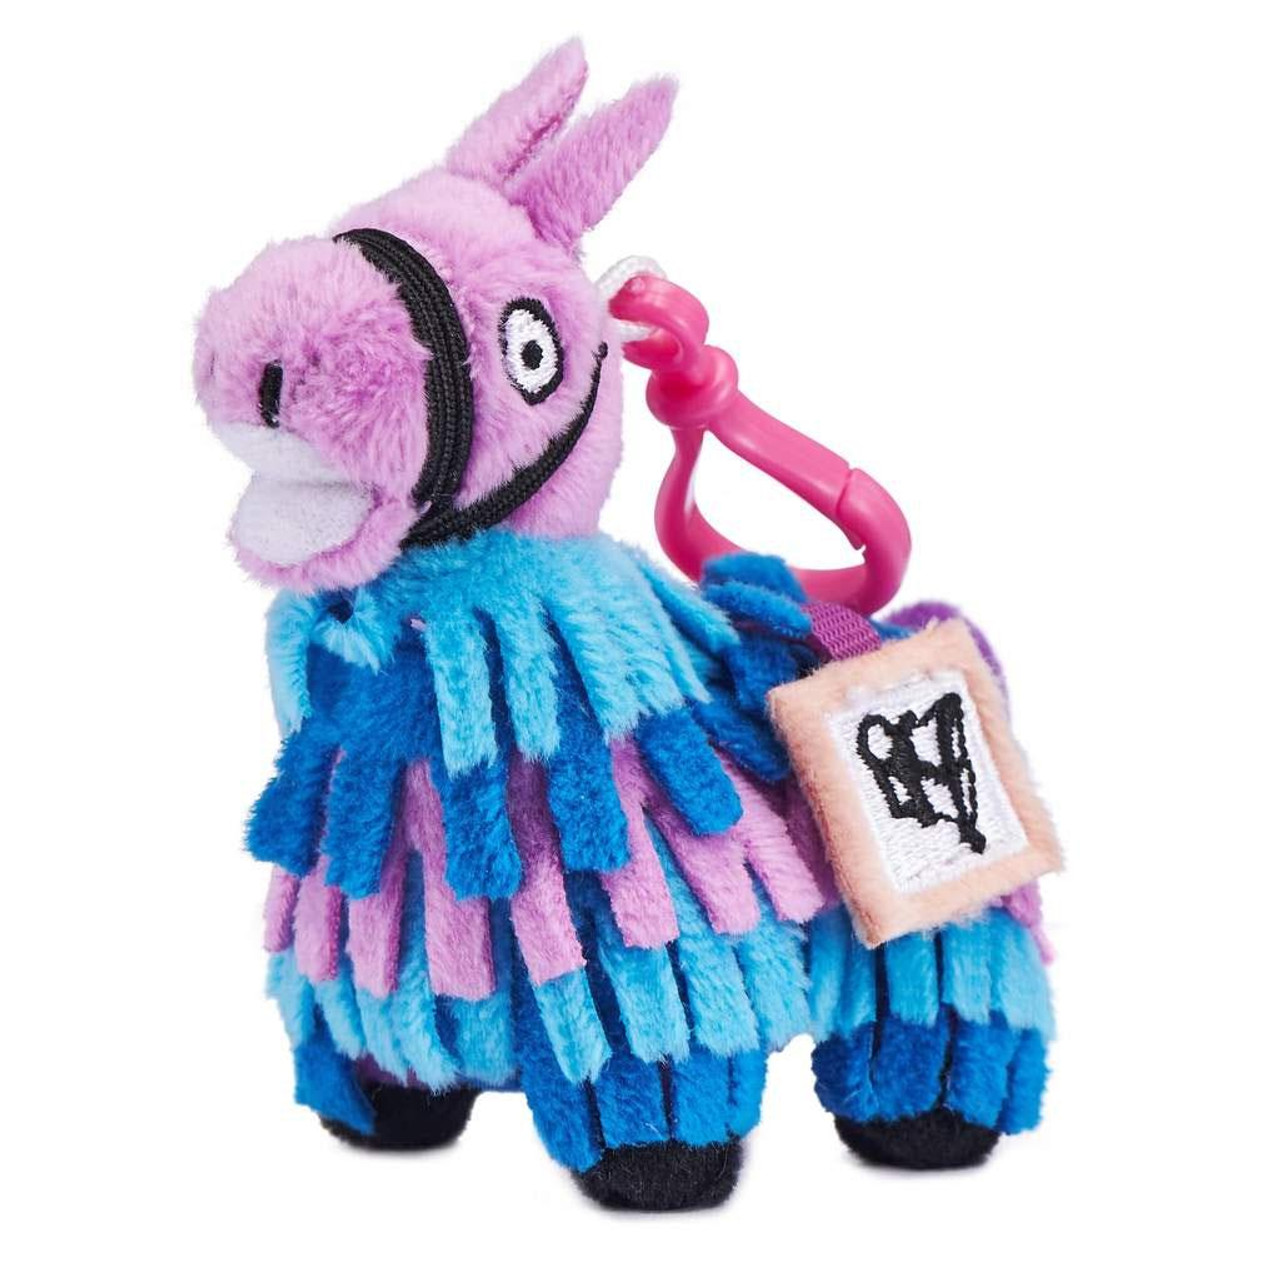 fortnite llama plush toy